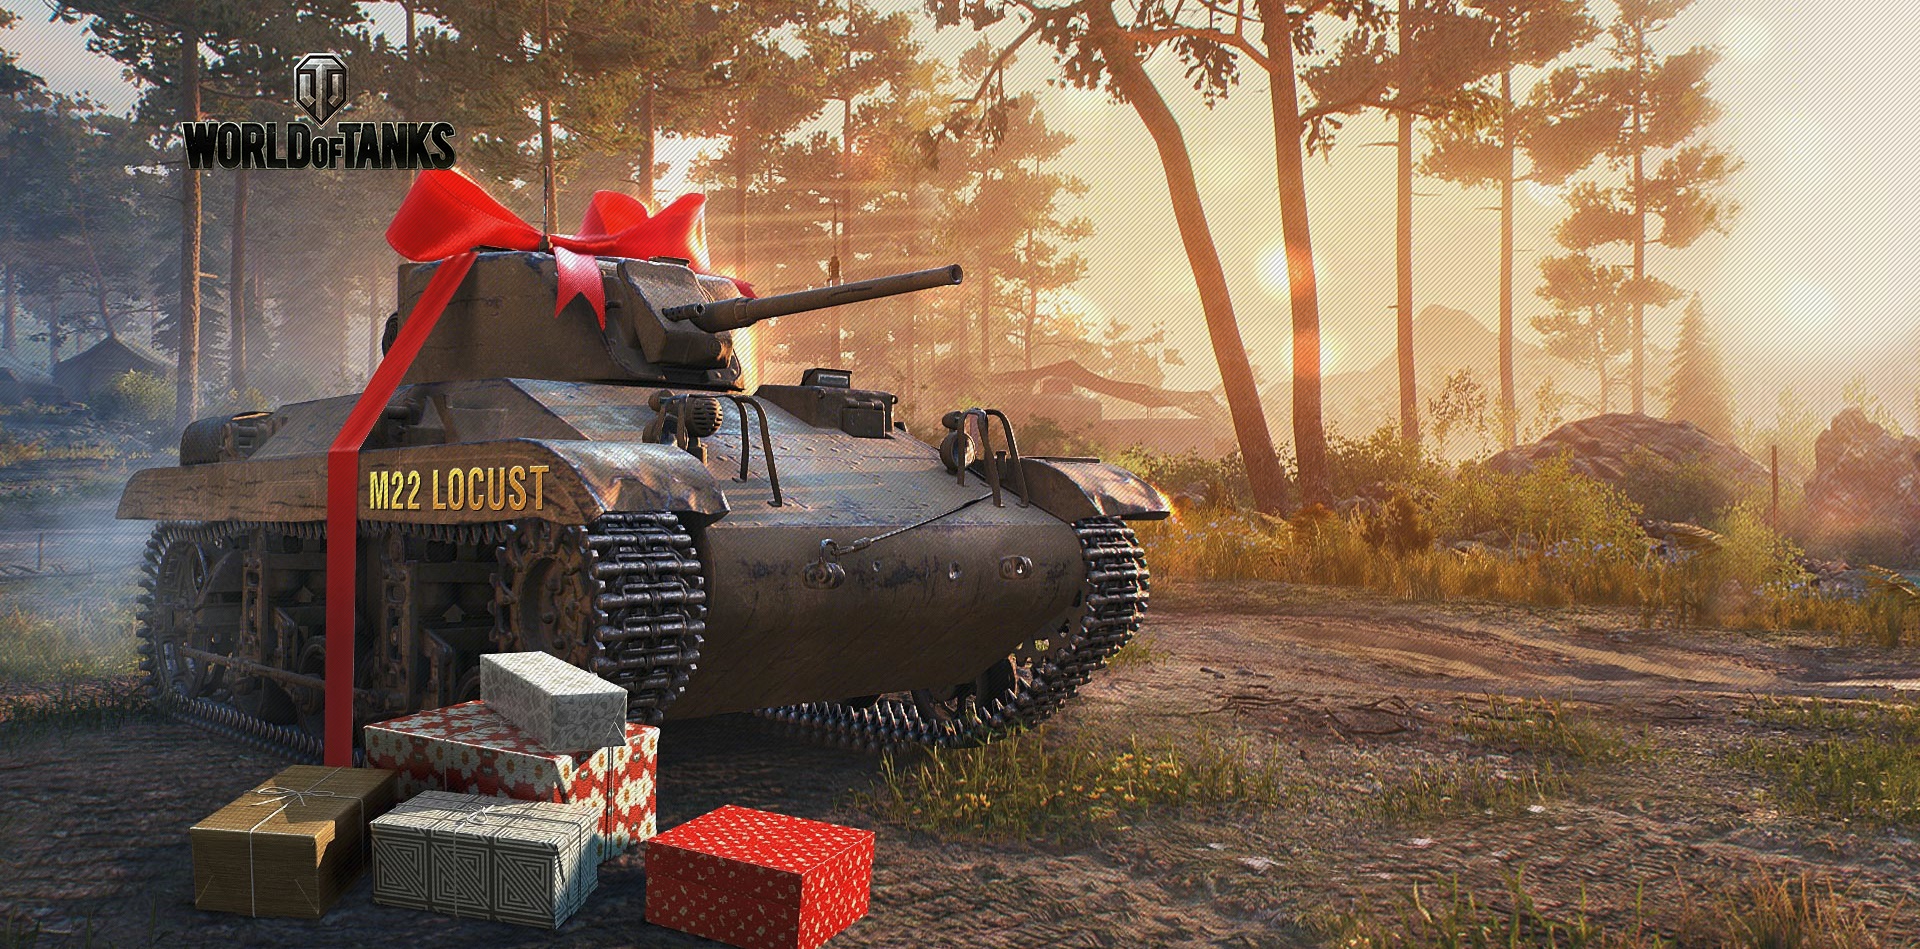 Как получить подарок в World of Tanks